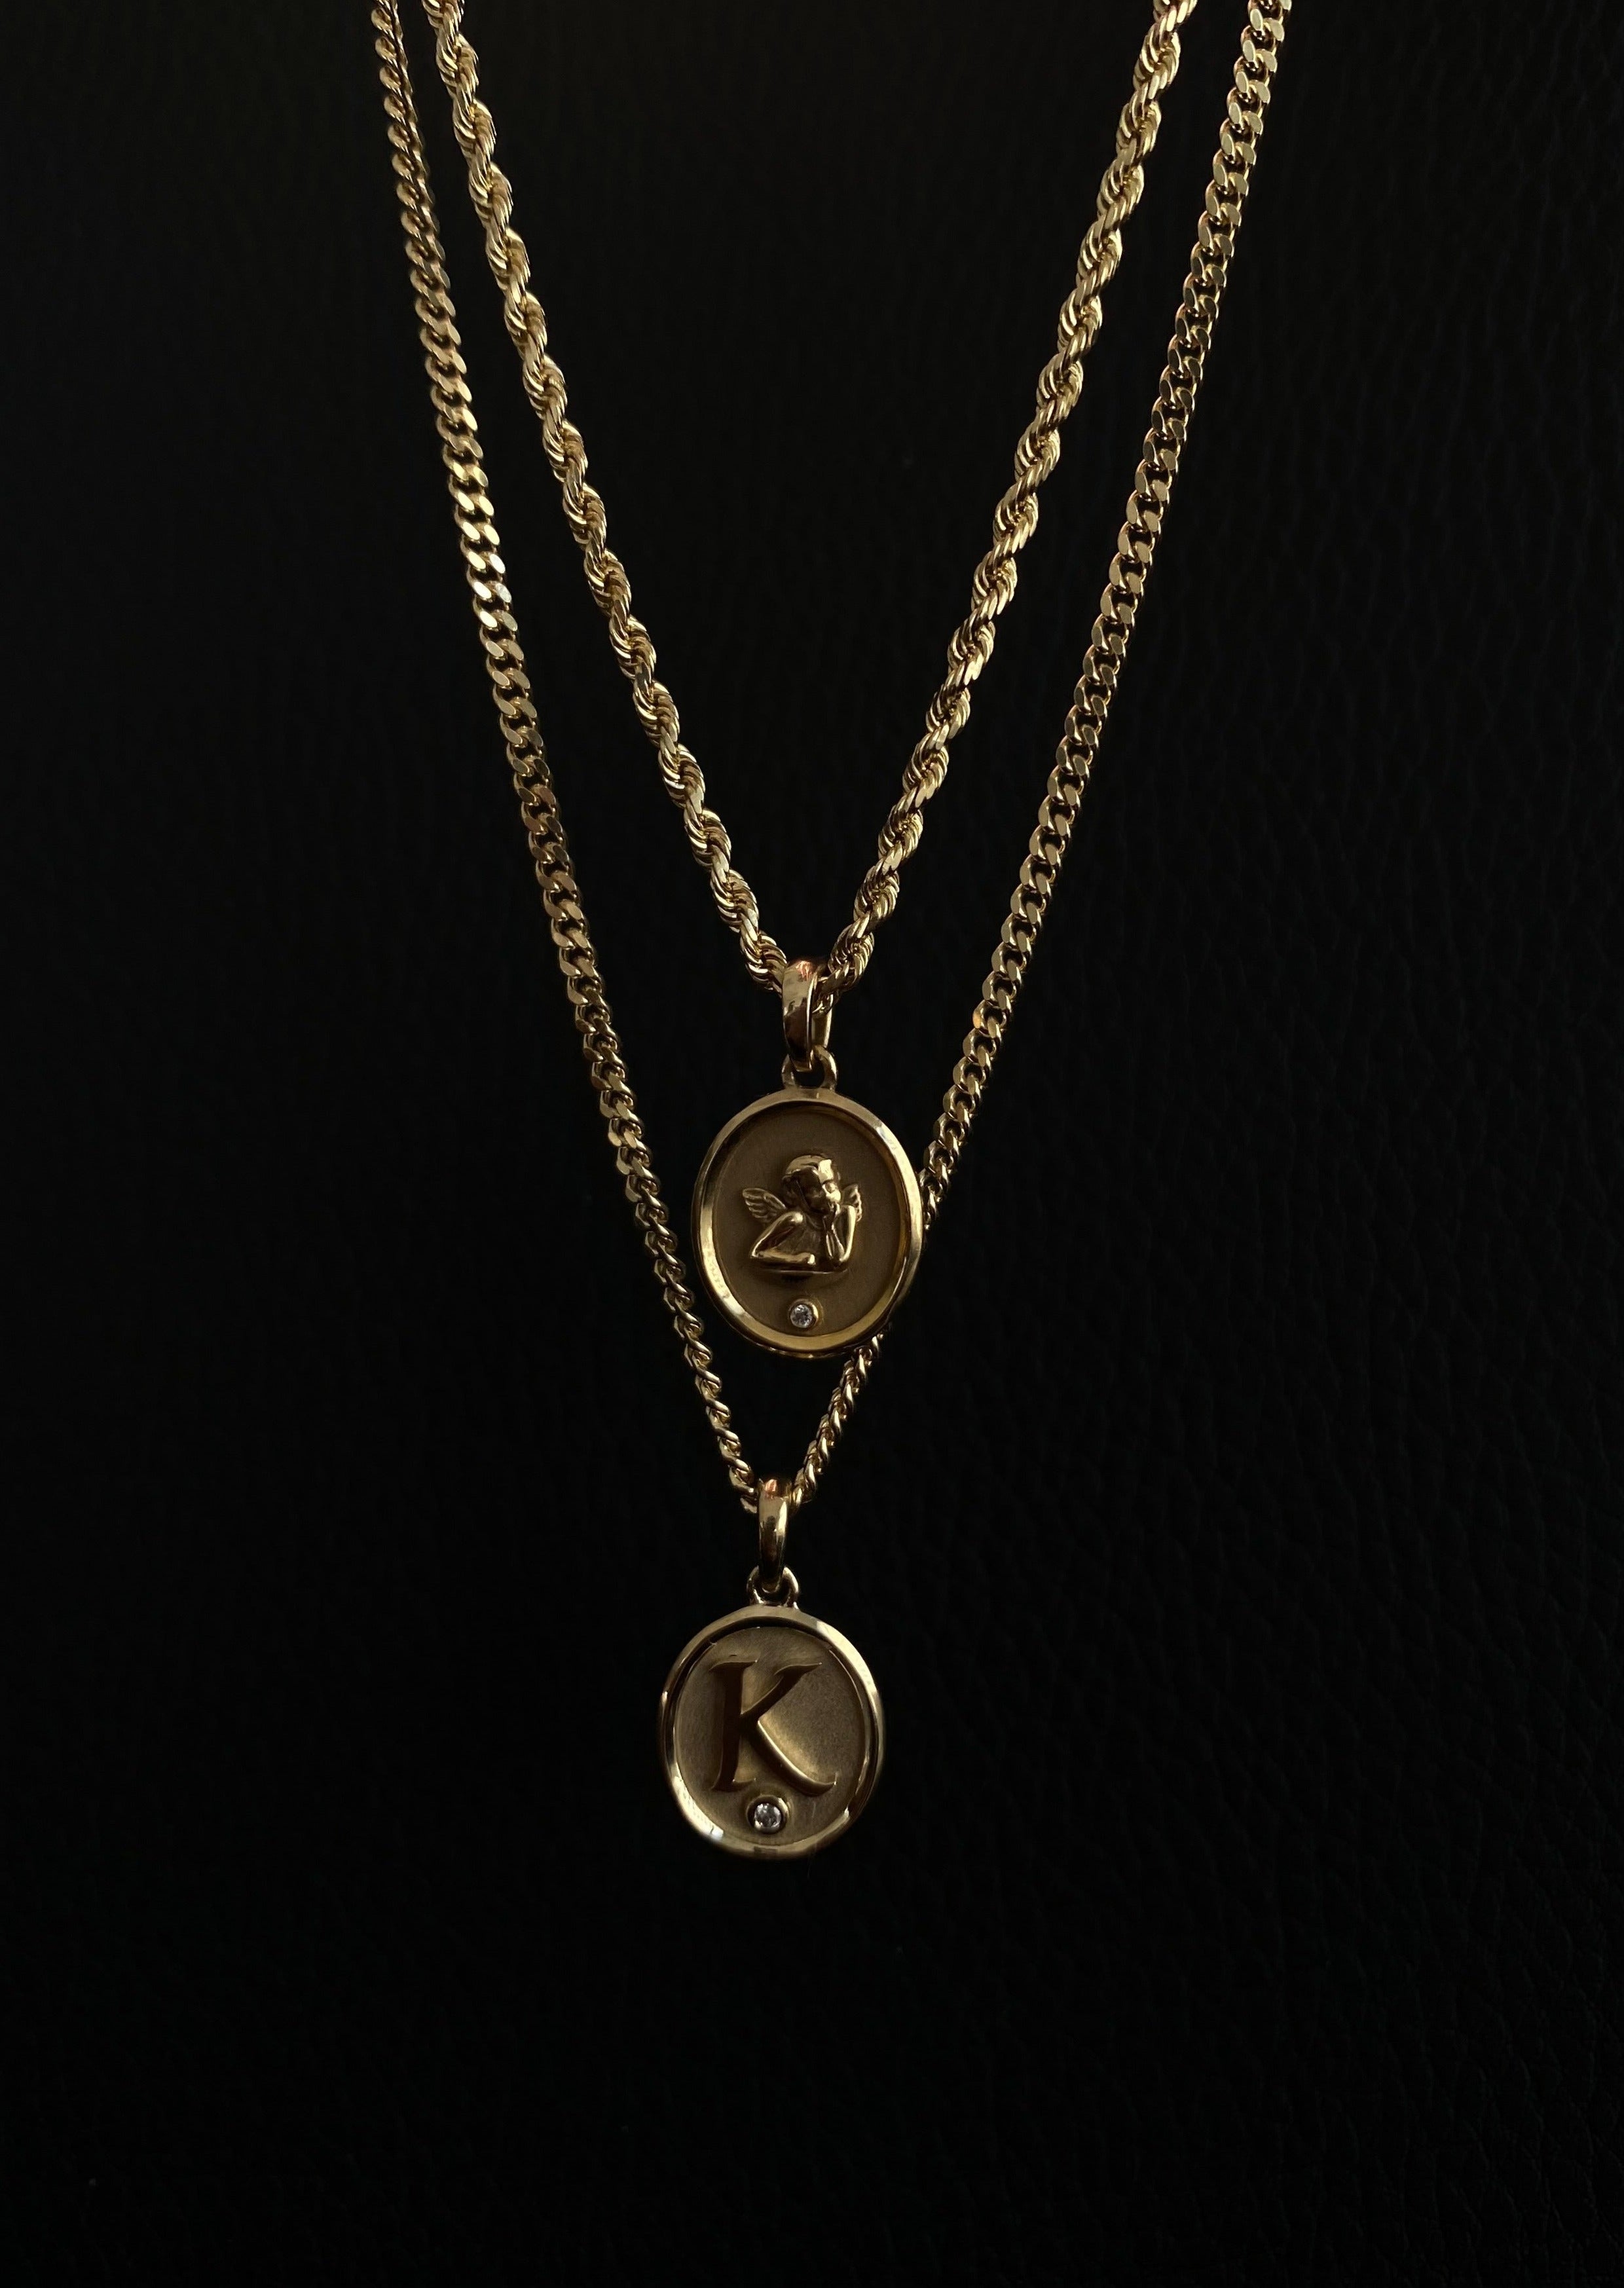 alt="Love Letter Diamond Necklace - Petite Curb Chain"